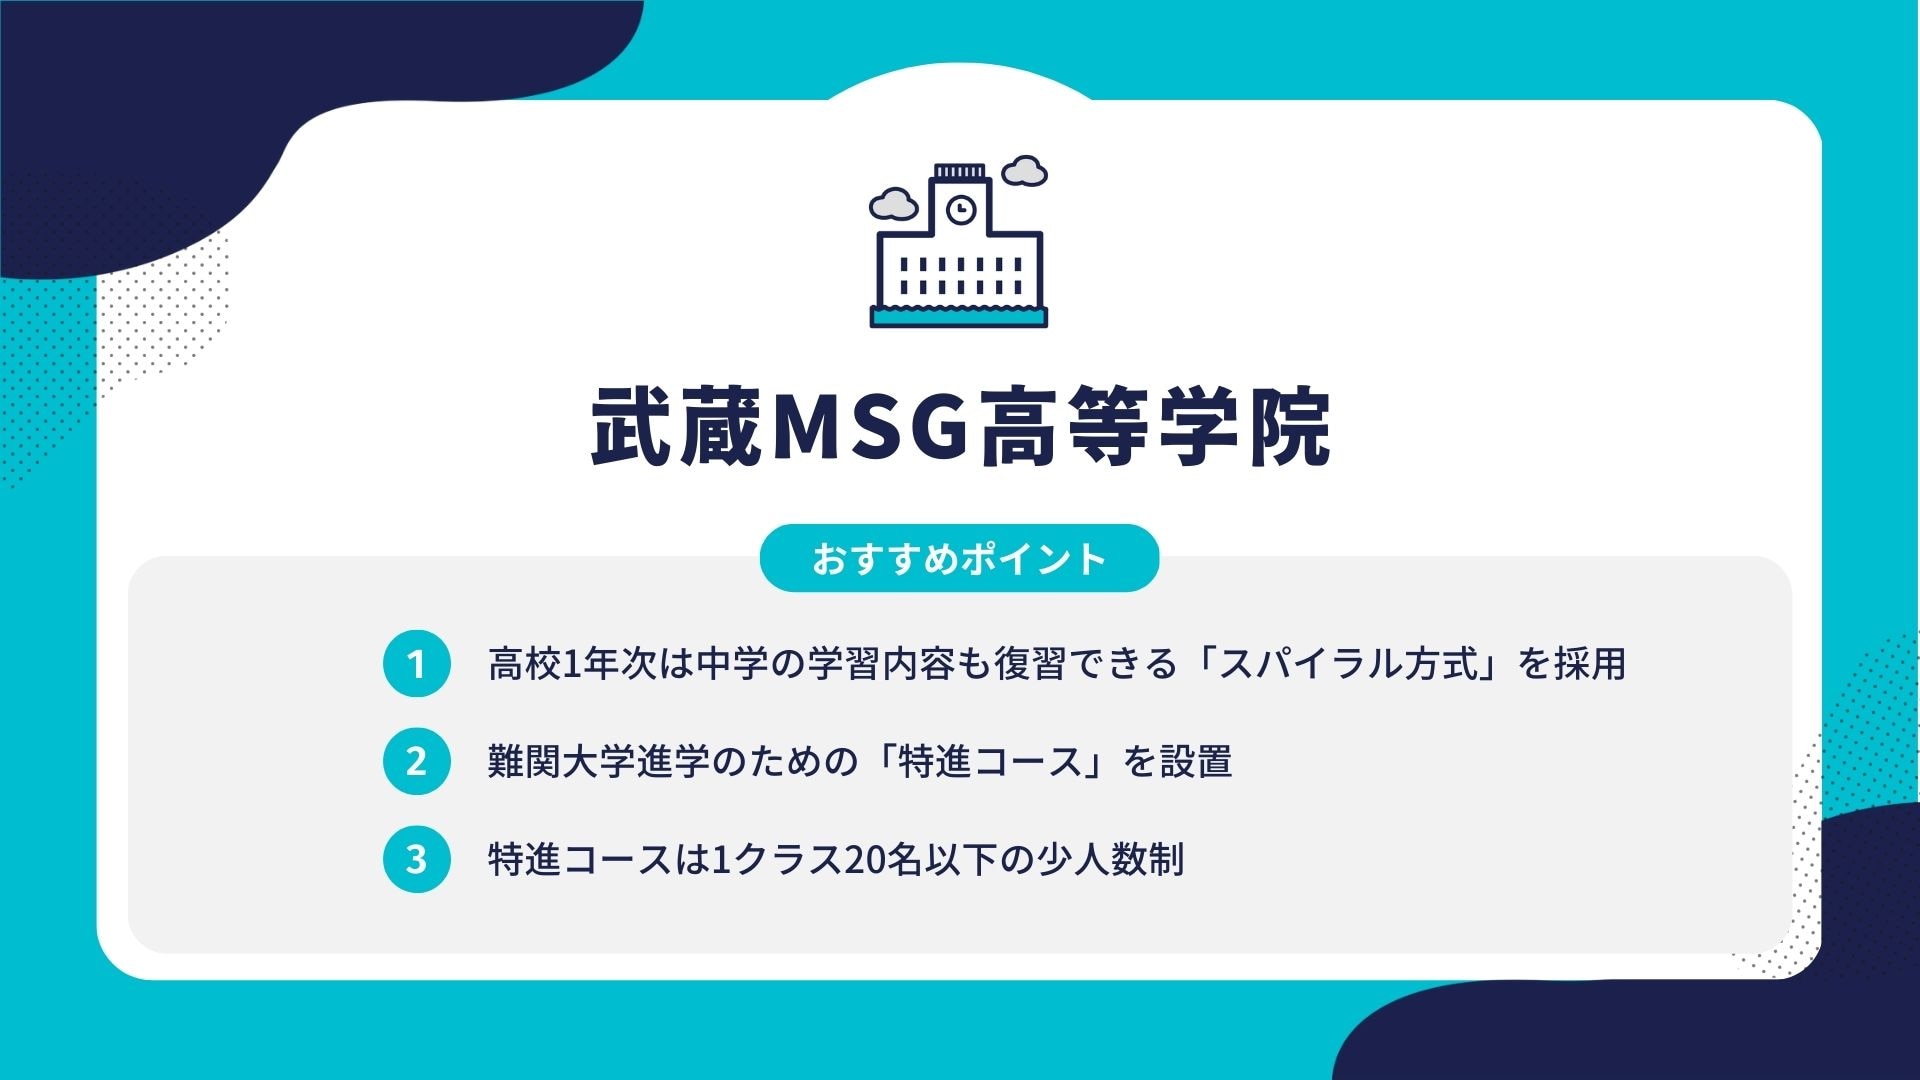 武蔵MSG高等学院